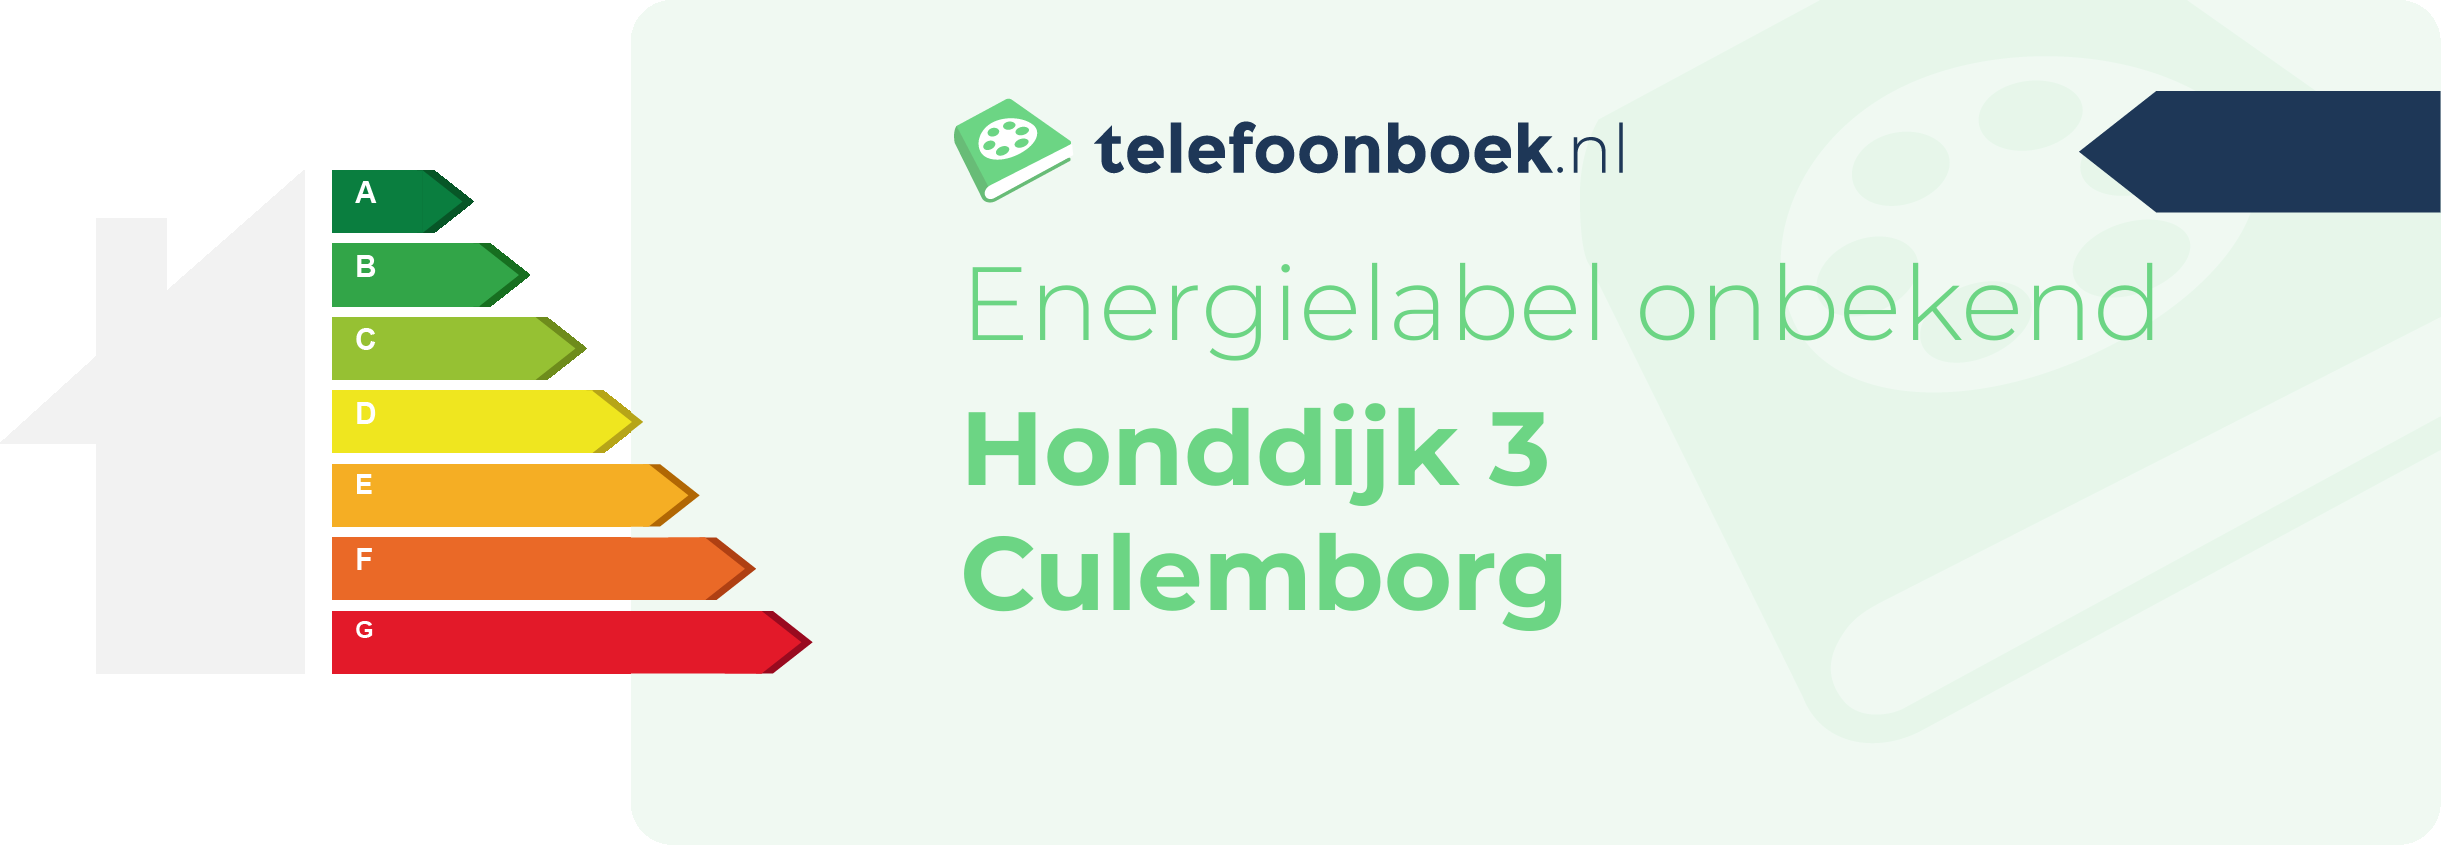 Energielabel Honddijk 3 Culemborg